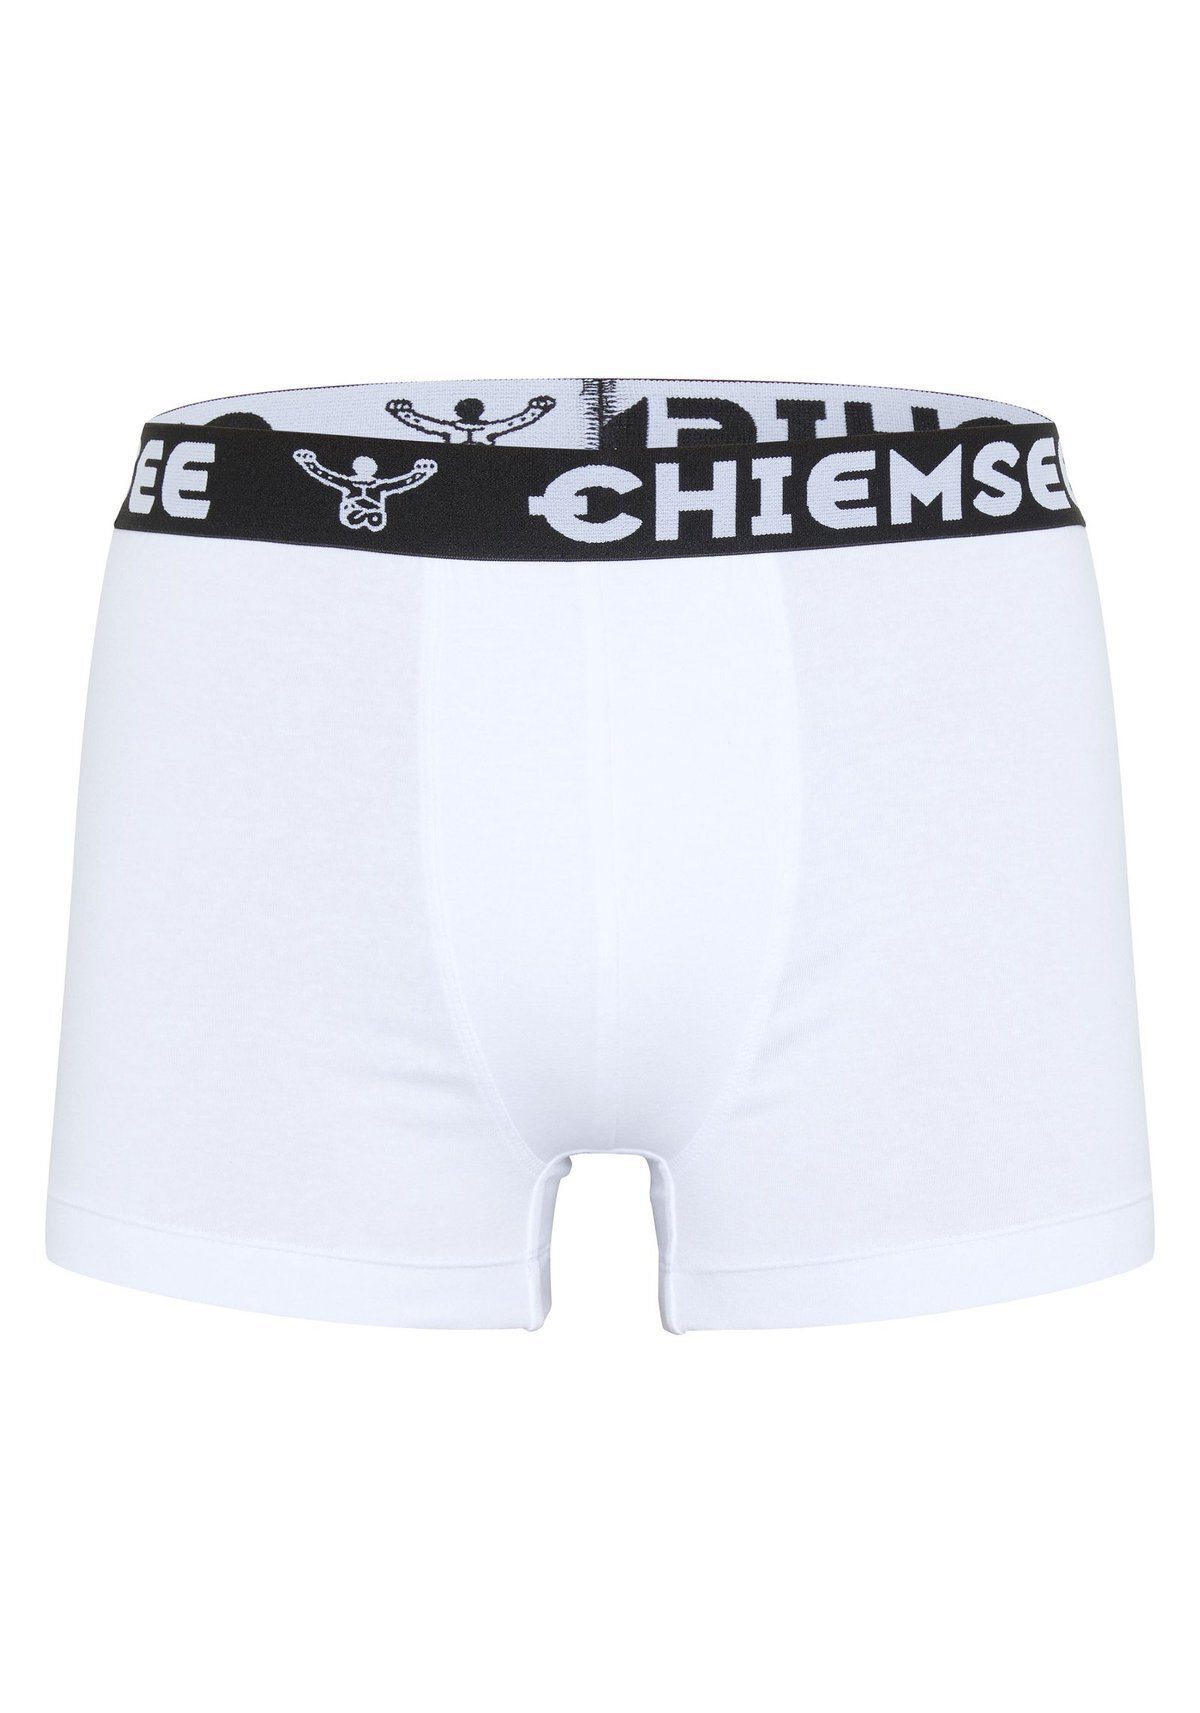 Boxer 3er Shorts, Logobund Weiß Herren Pack Chiemsee Boxershorts, -